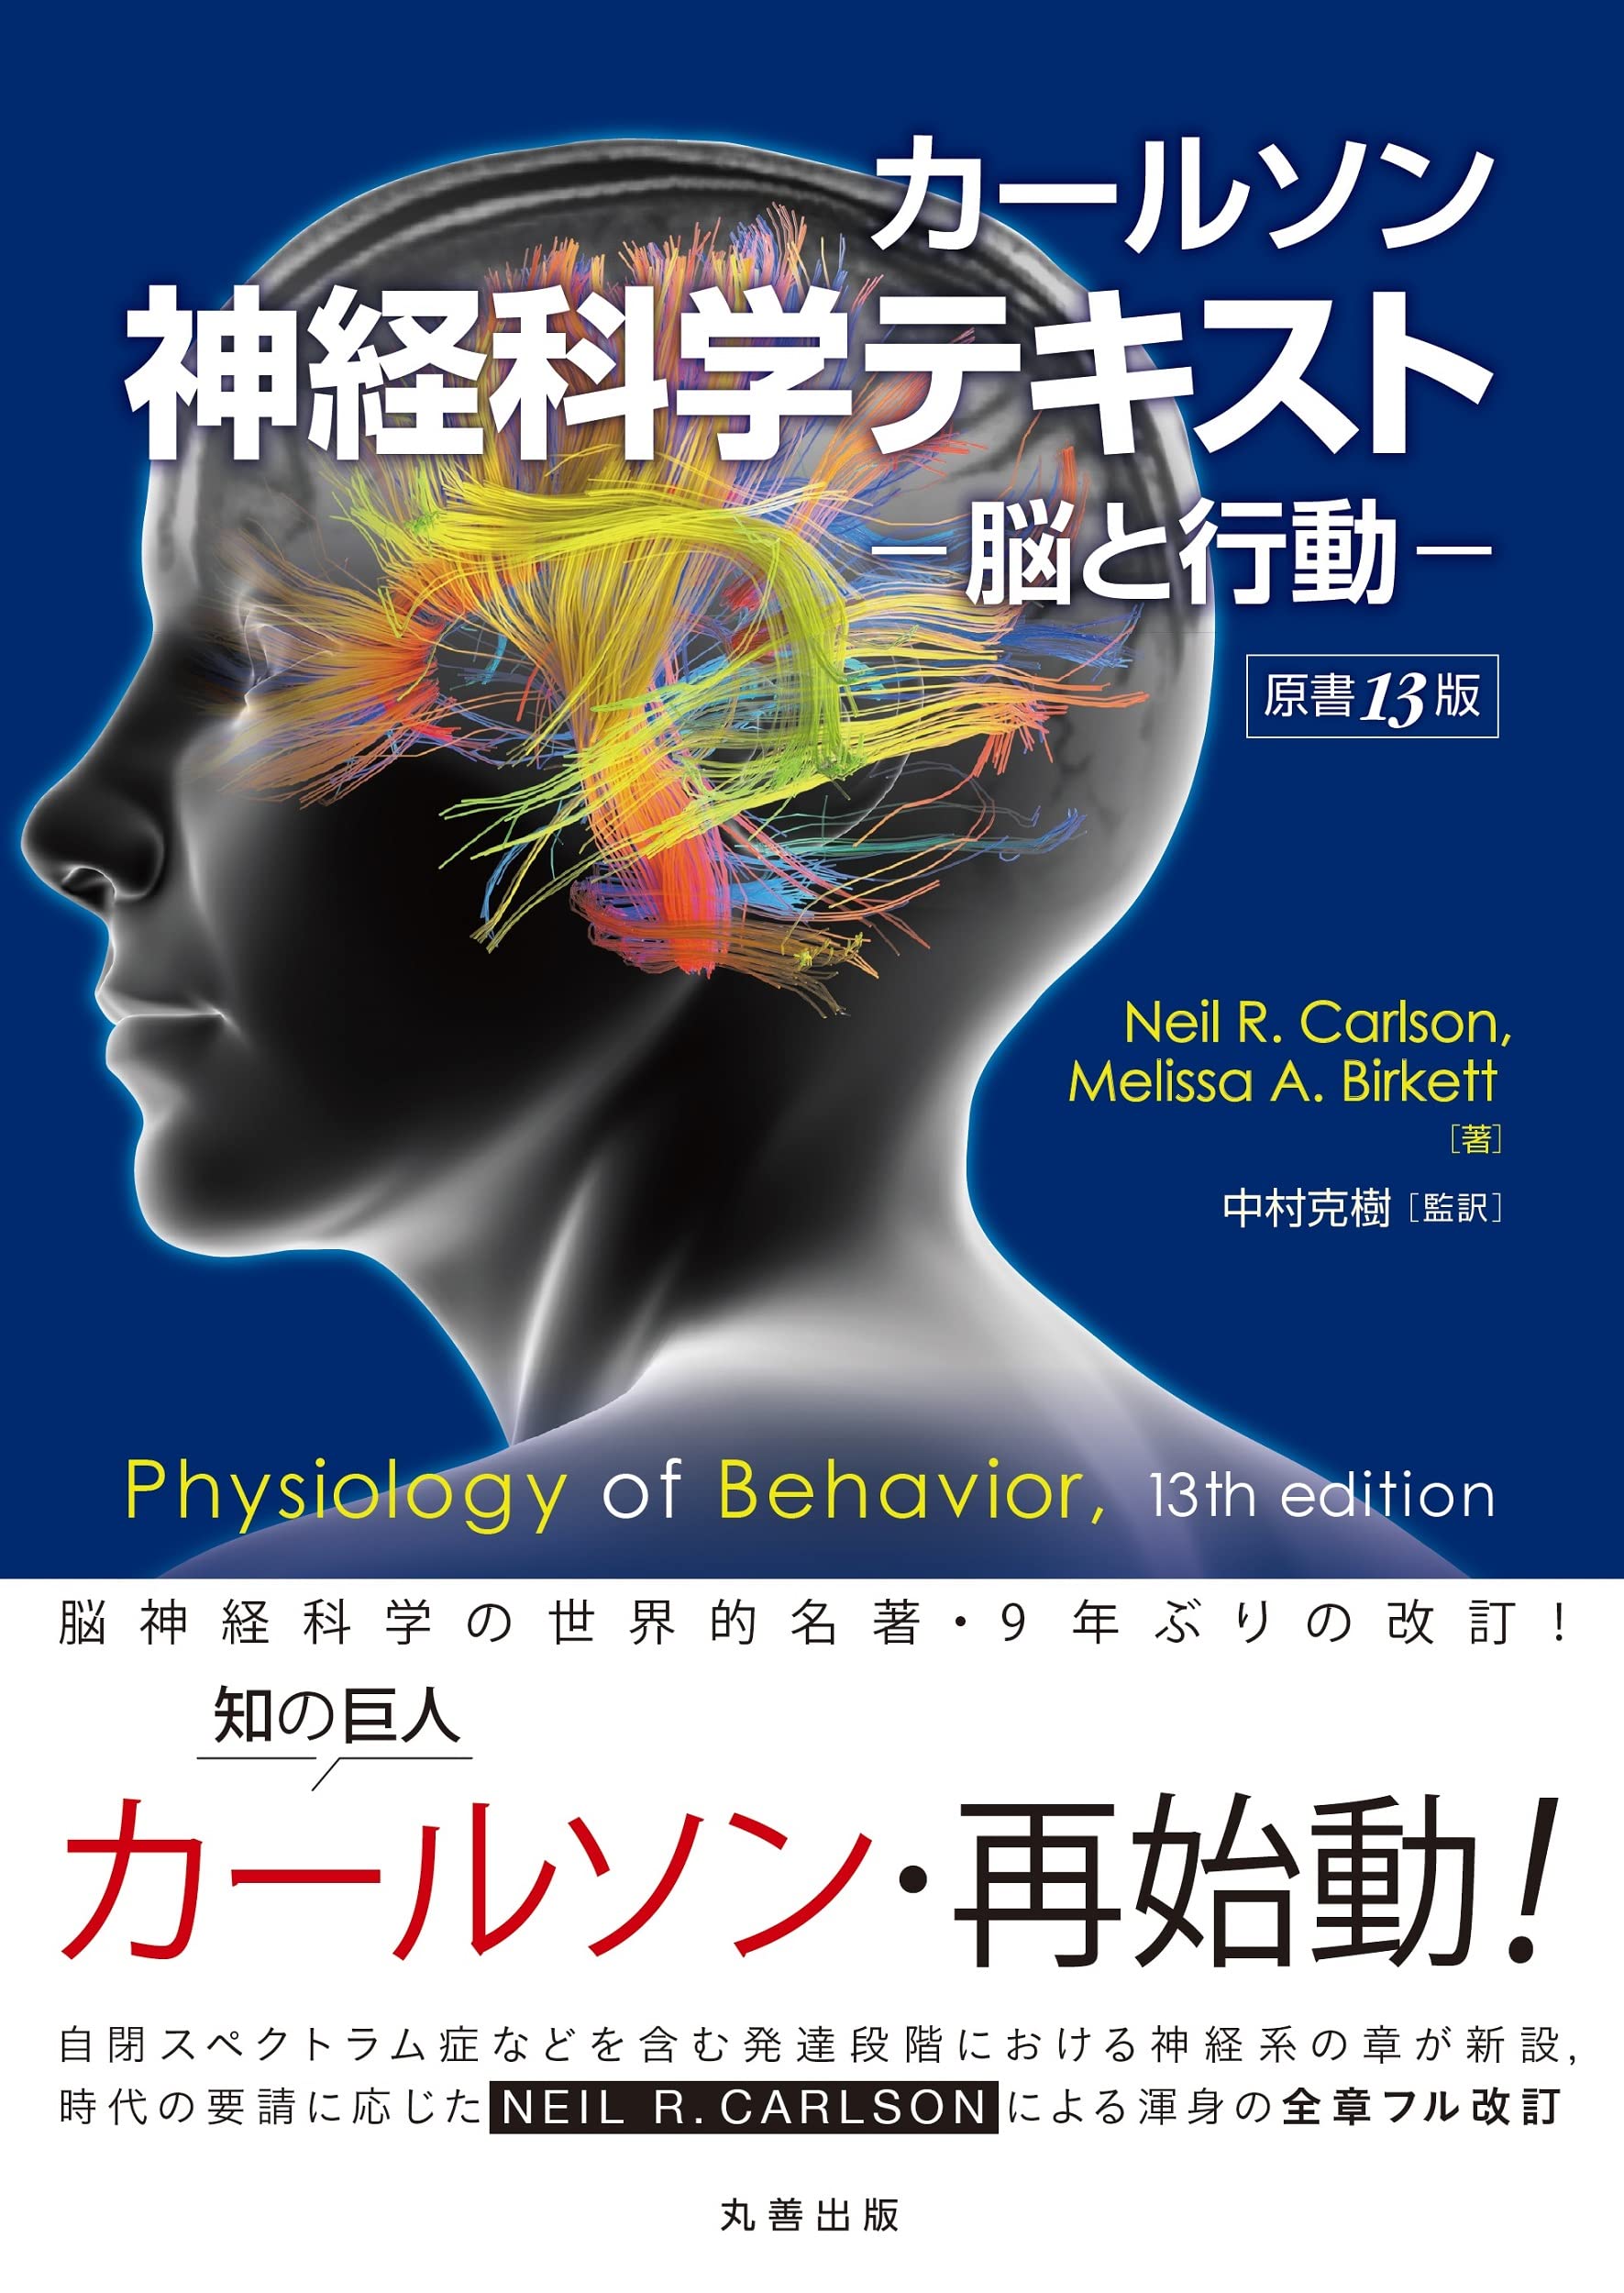 カールソン神経科学テキスト ー脳と行動ー 原書13版